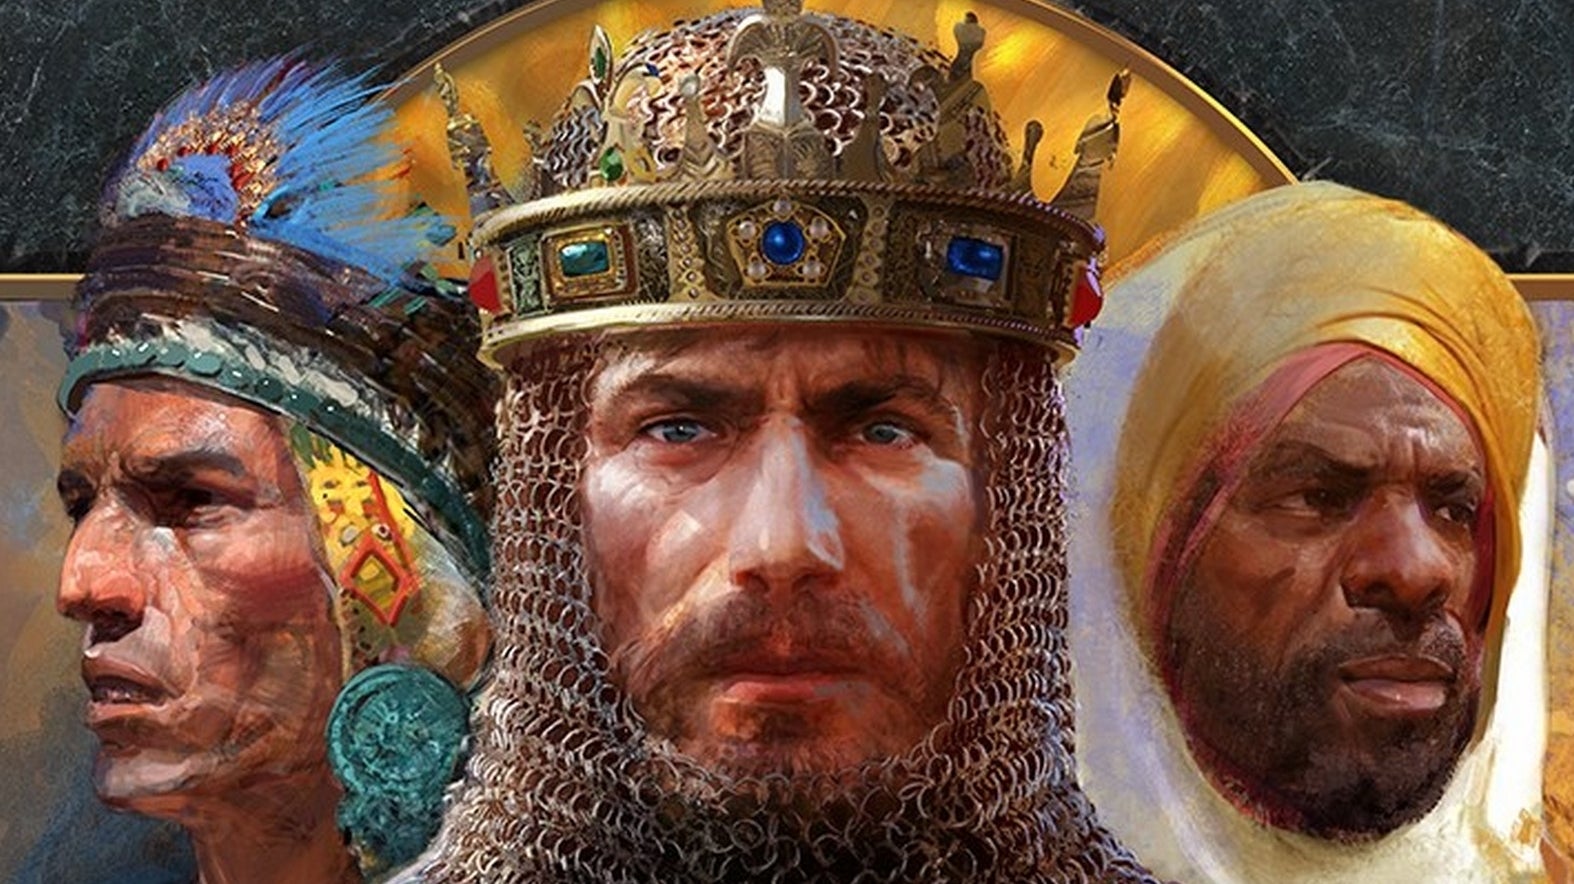 Immagine di Age of Empires 2 riceverà una nuova espansione, Age of Empires 3 una nuova civiltà